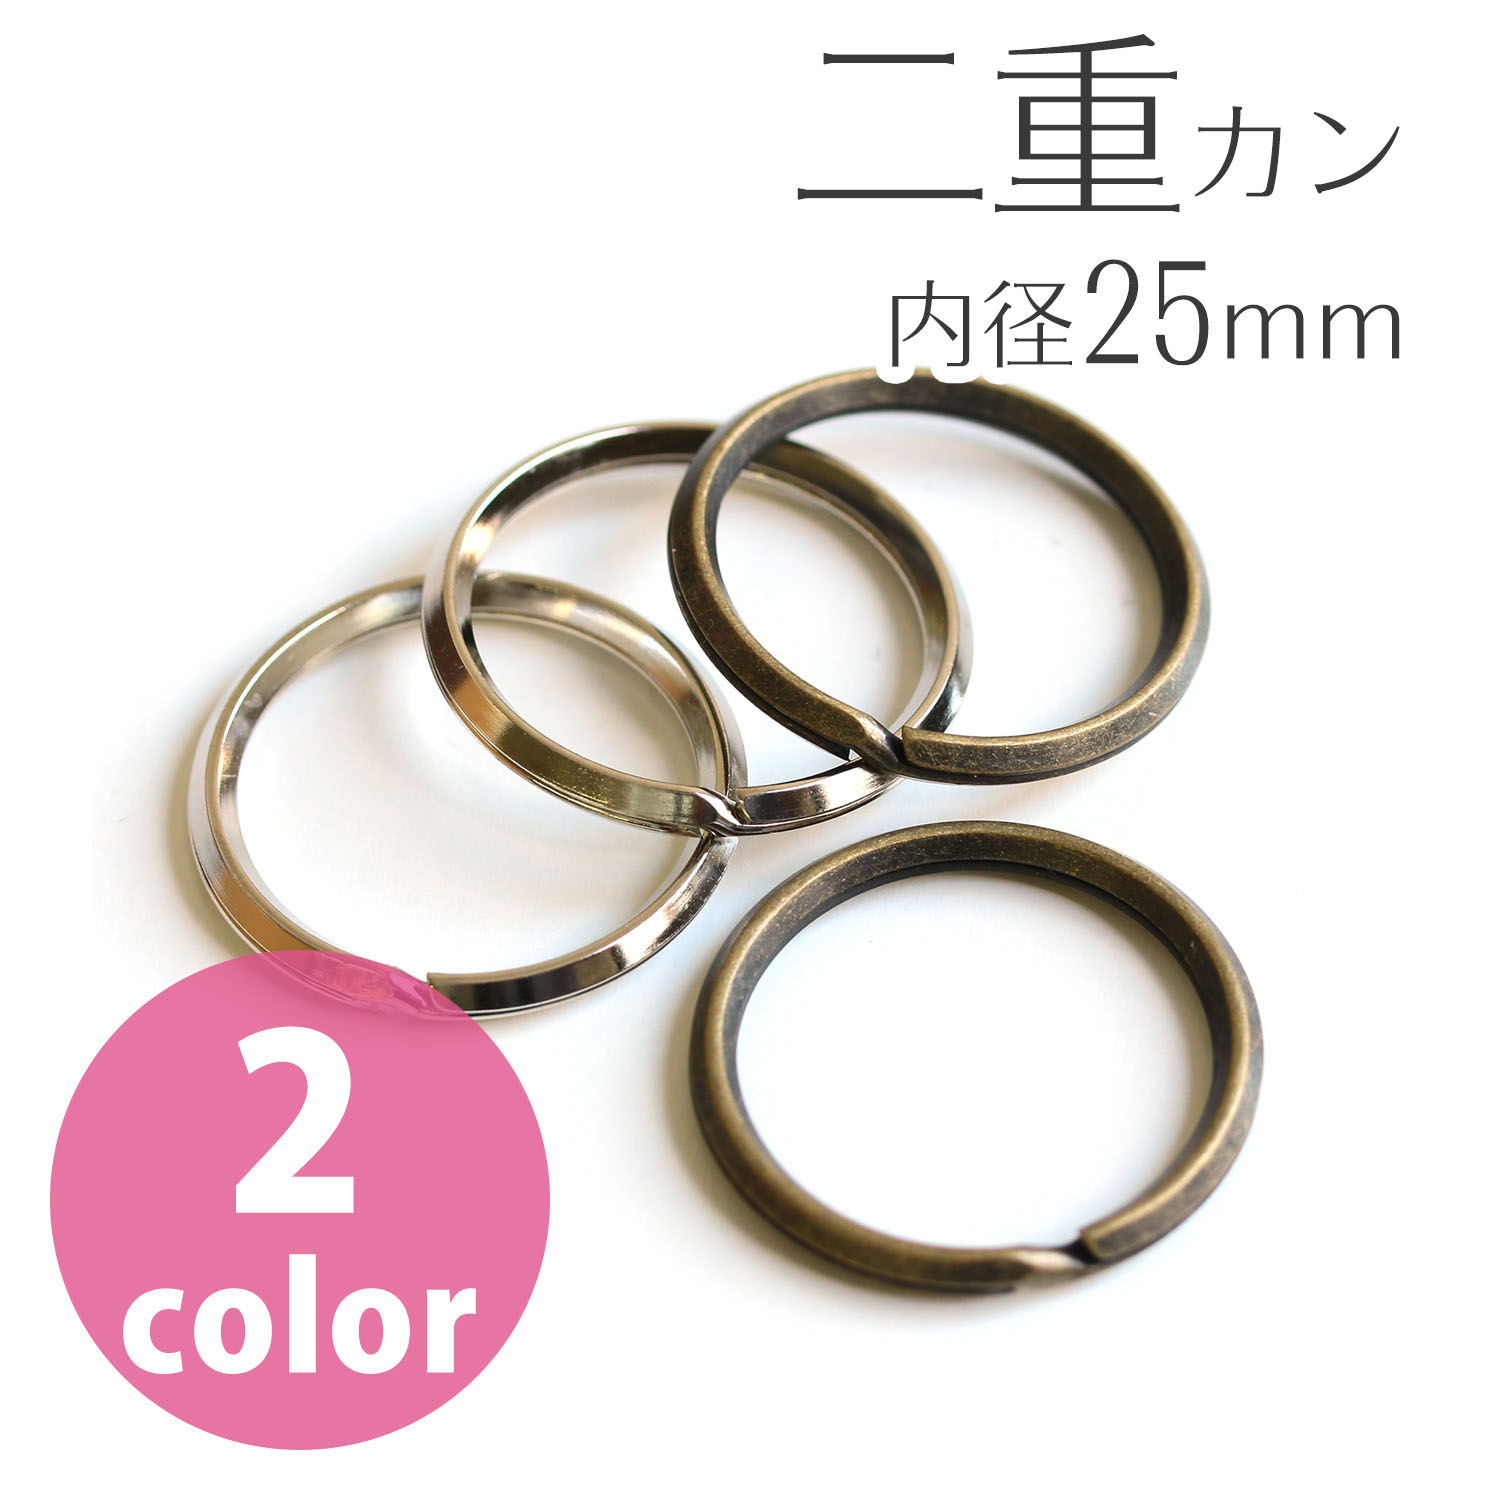 Split Rings outer diameter 30mm, inner diameter 25mm S 30pcs (bag)